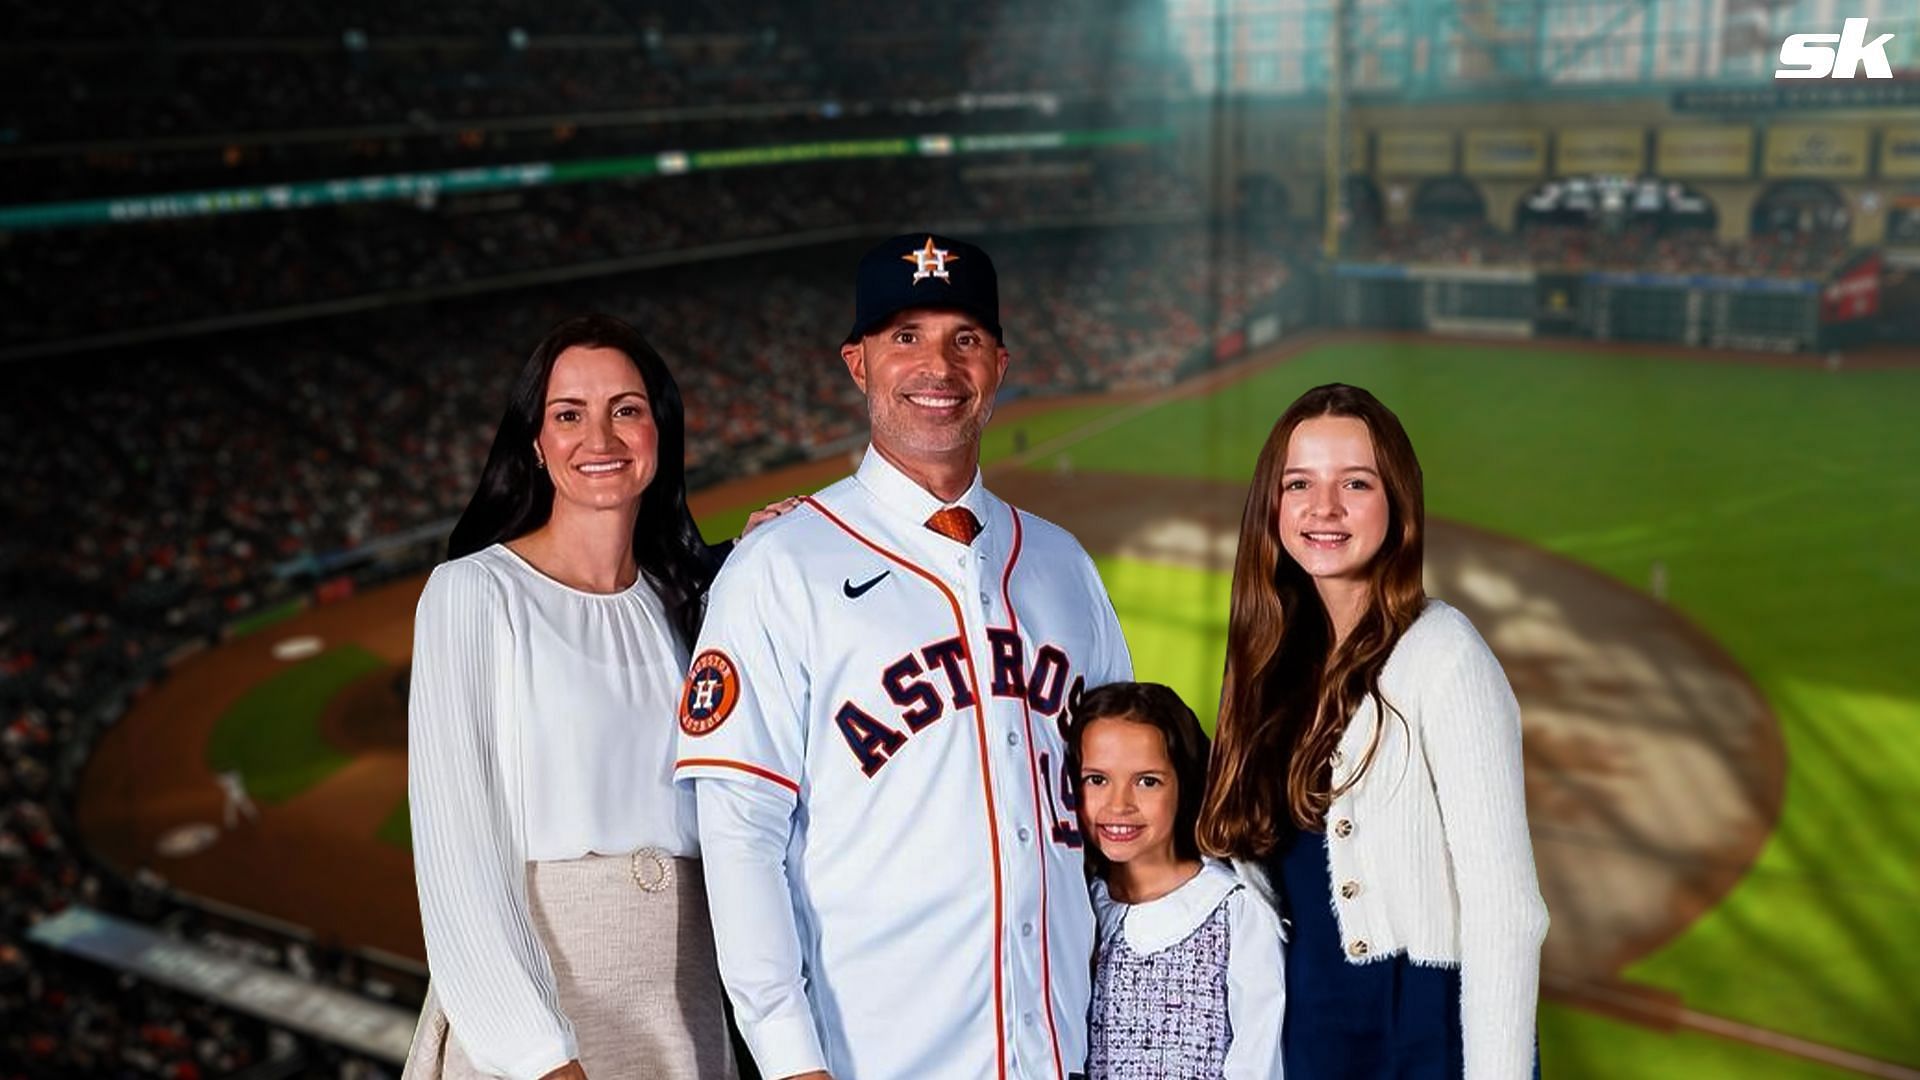 Astros coach Joe Espada's daughter Viviana nails first pitch at autism awareness night